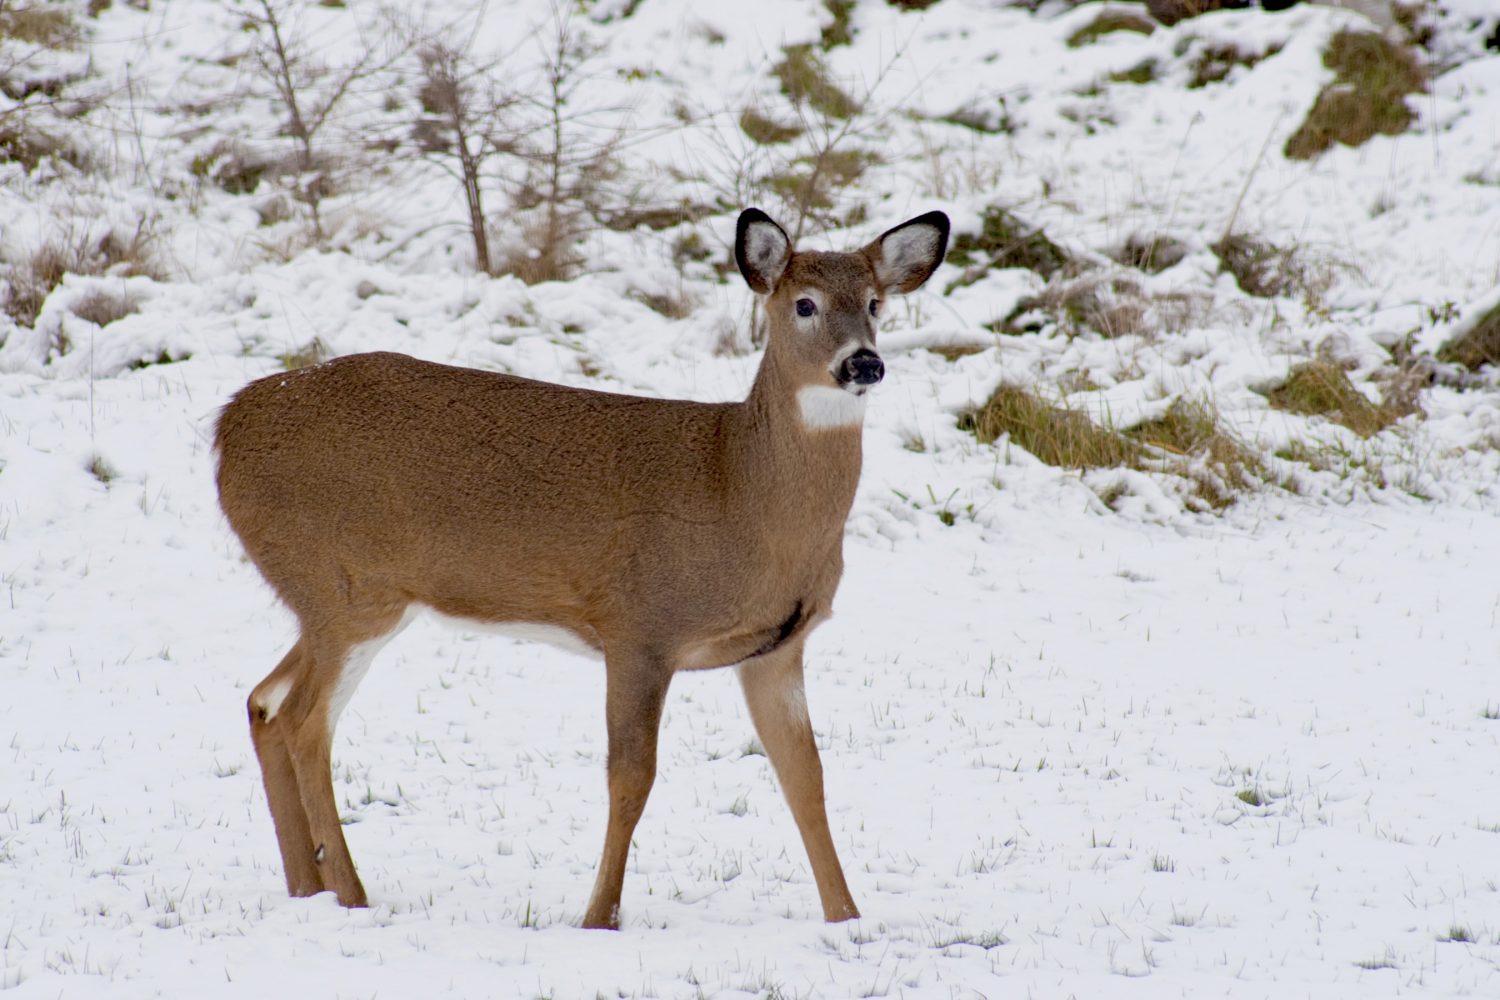 Deer donations help Wisconsinites in need